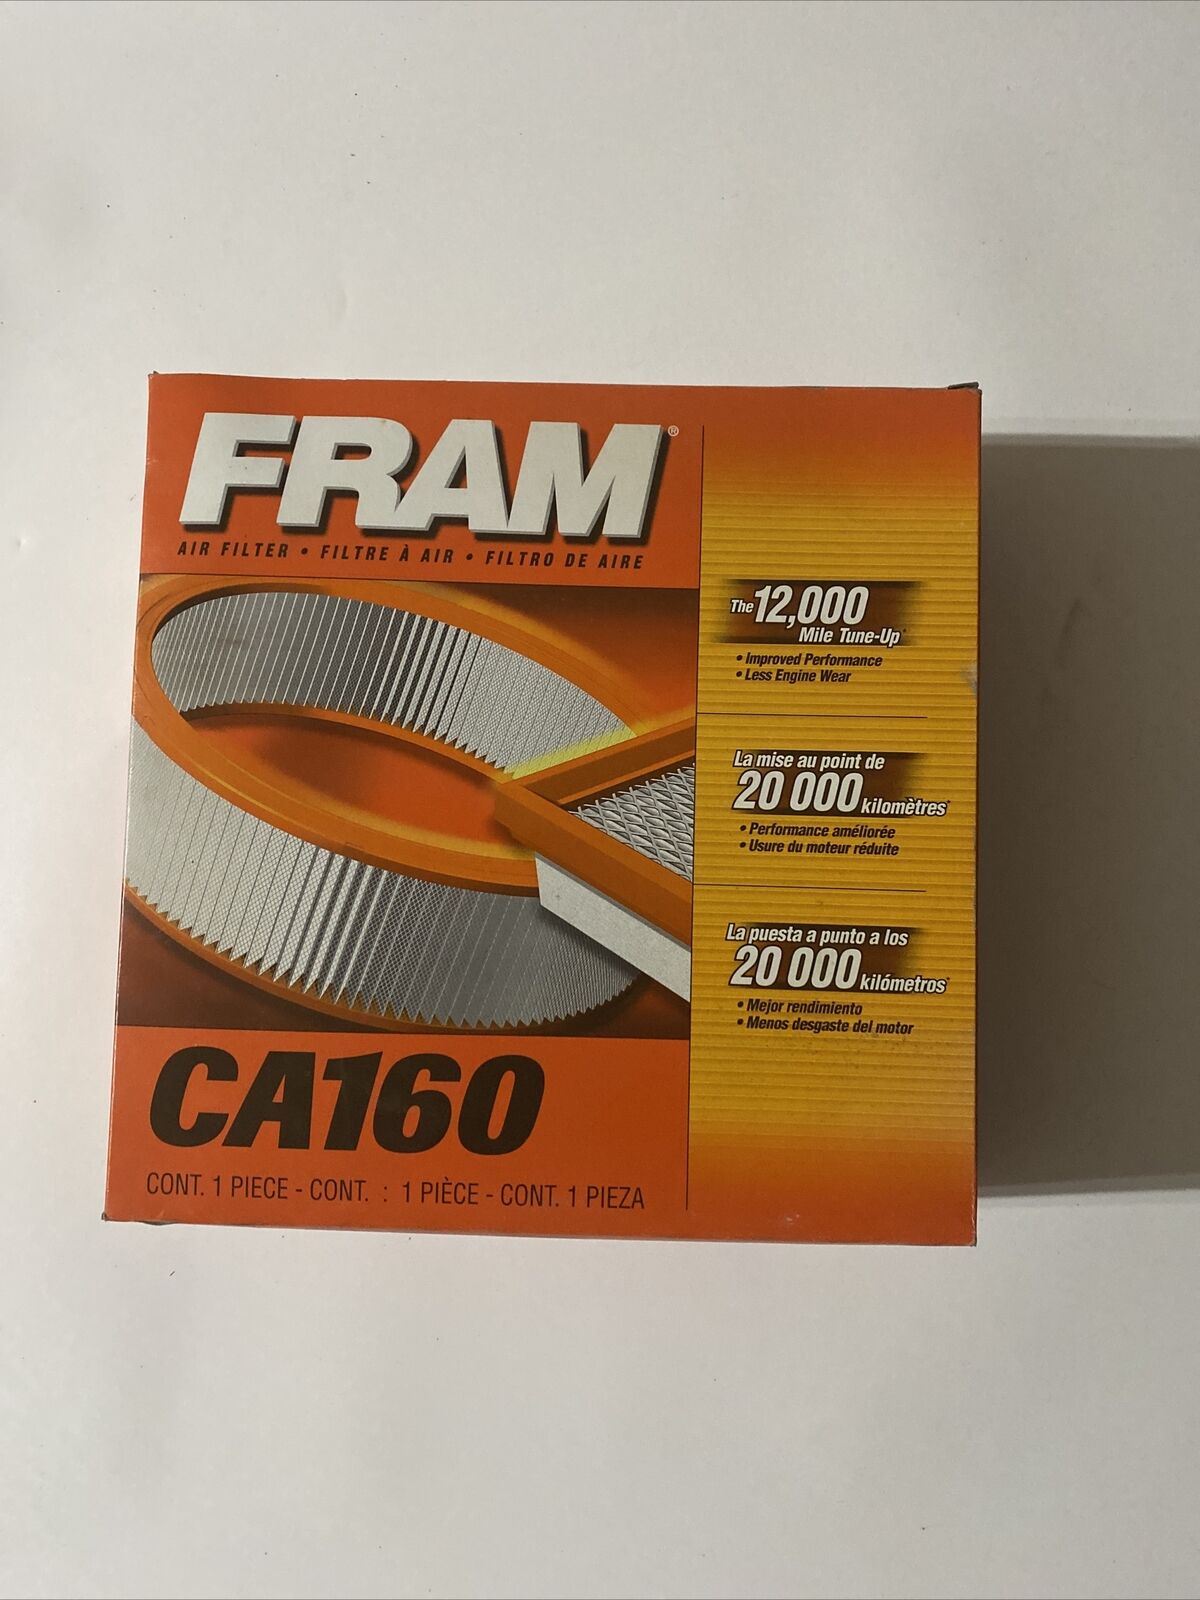 Fram CA160 Air Filter